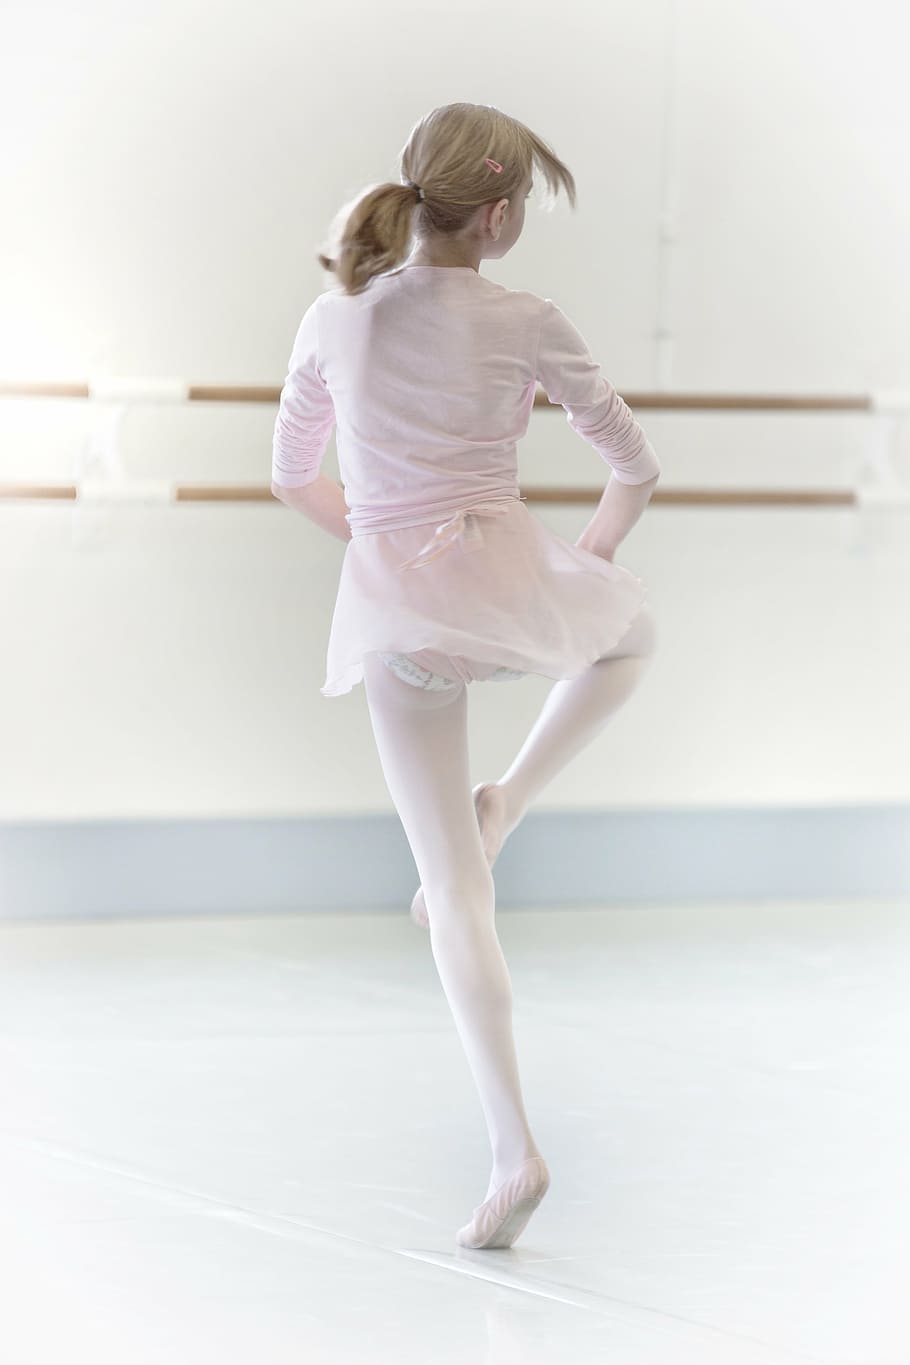 girl, practicing, ballerina activities, dance, dancer, high key, ballet, dancing, ballet dancer, full length